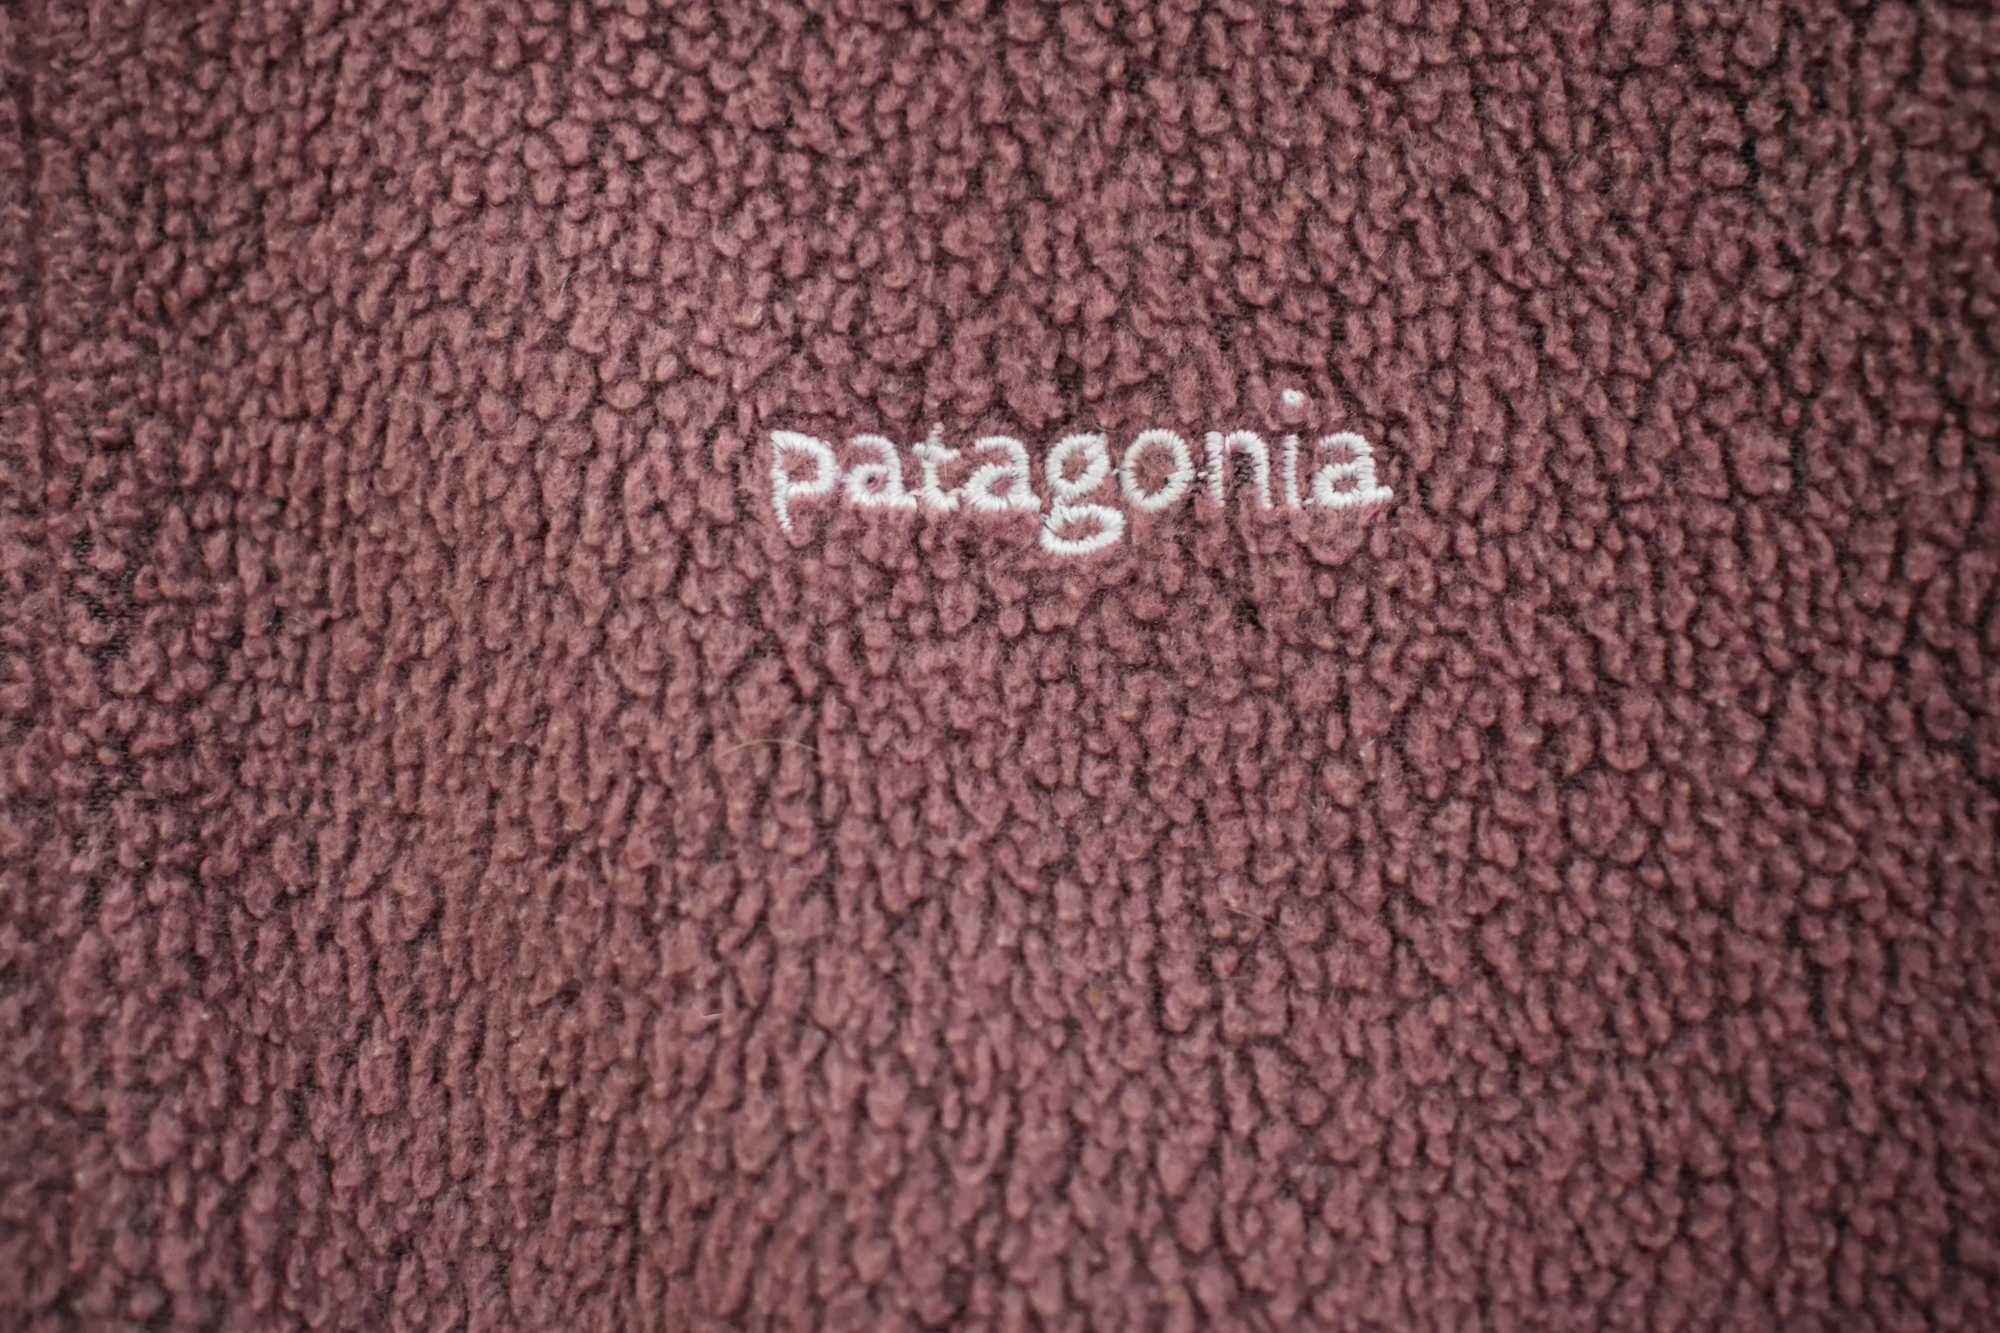 Patagonia bluza polar oryginał XS S 34 36